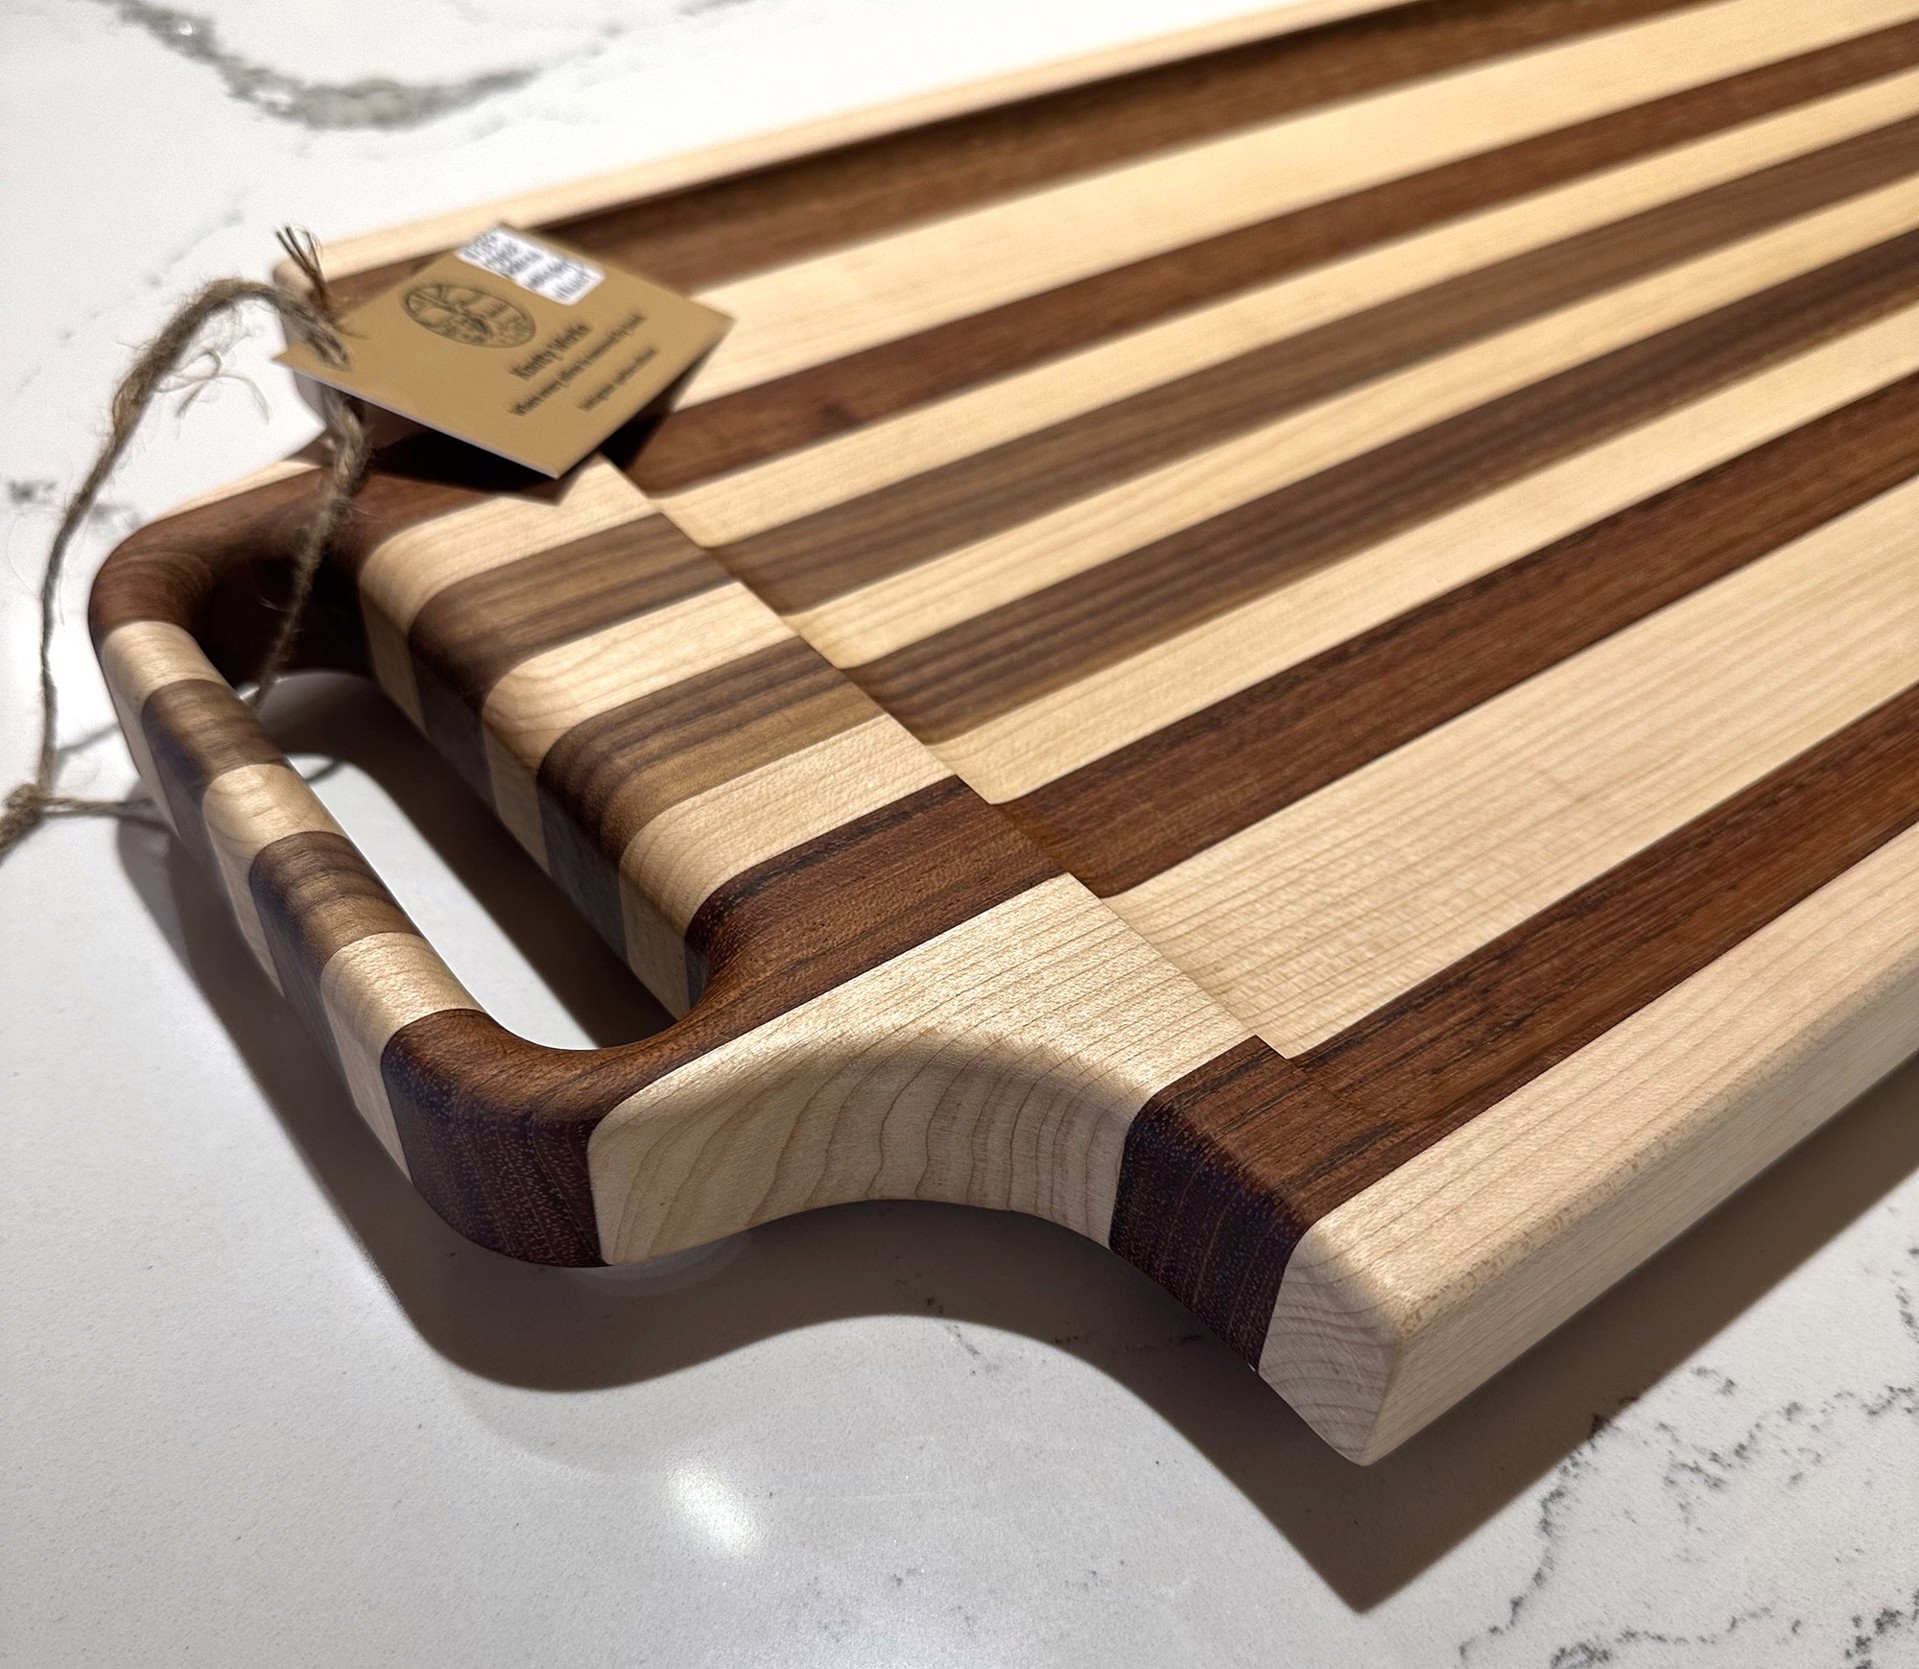 Cutting Board - Maple, African Mahogany, Walnut by Edward McCallum